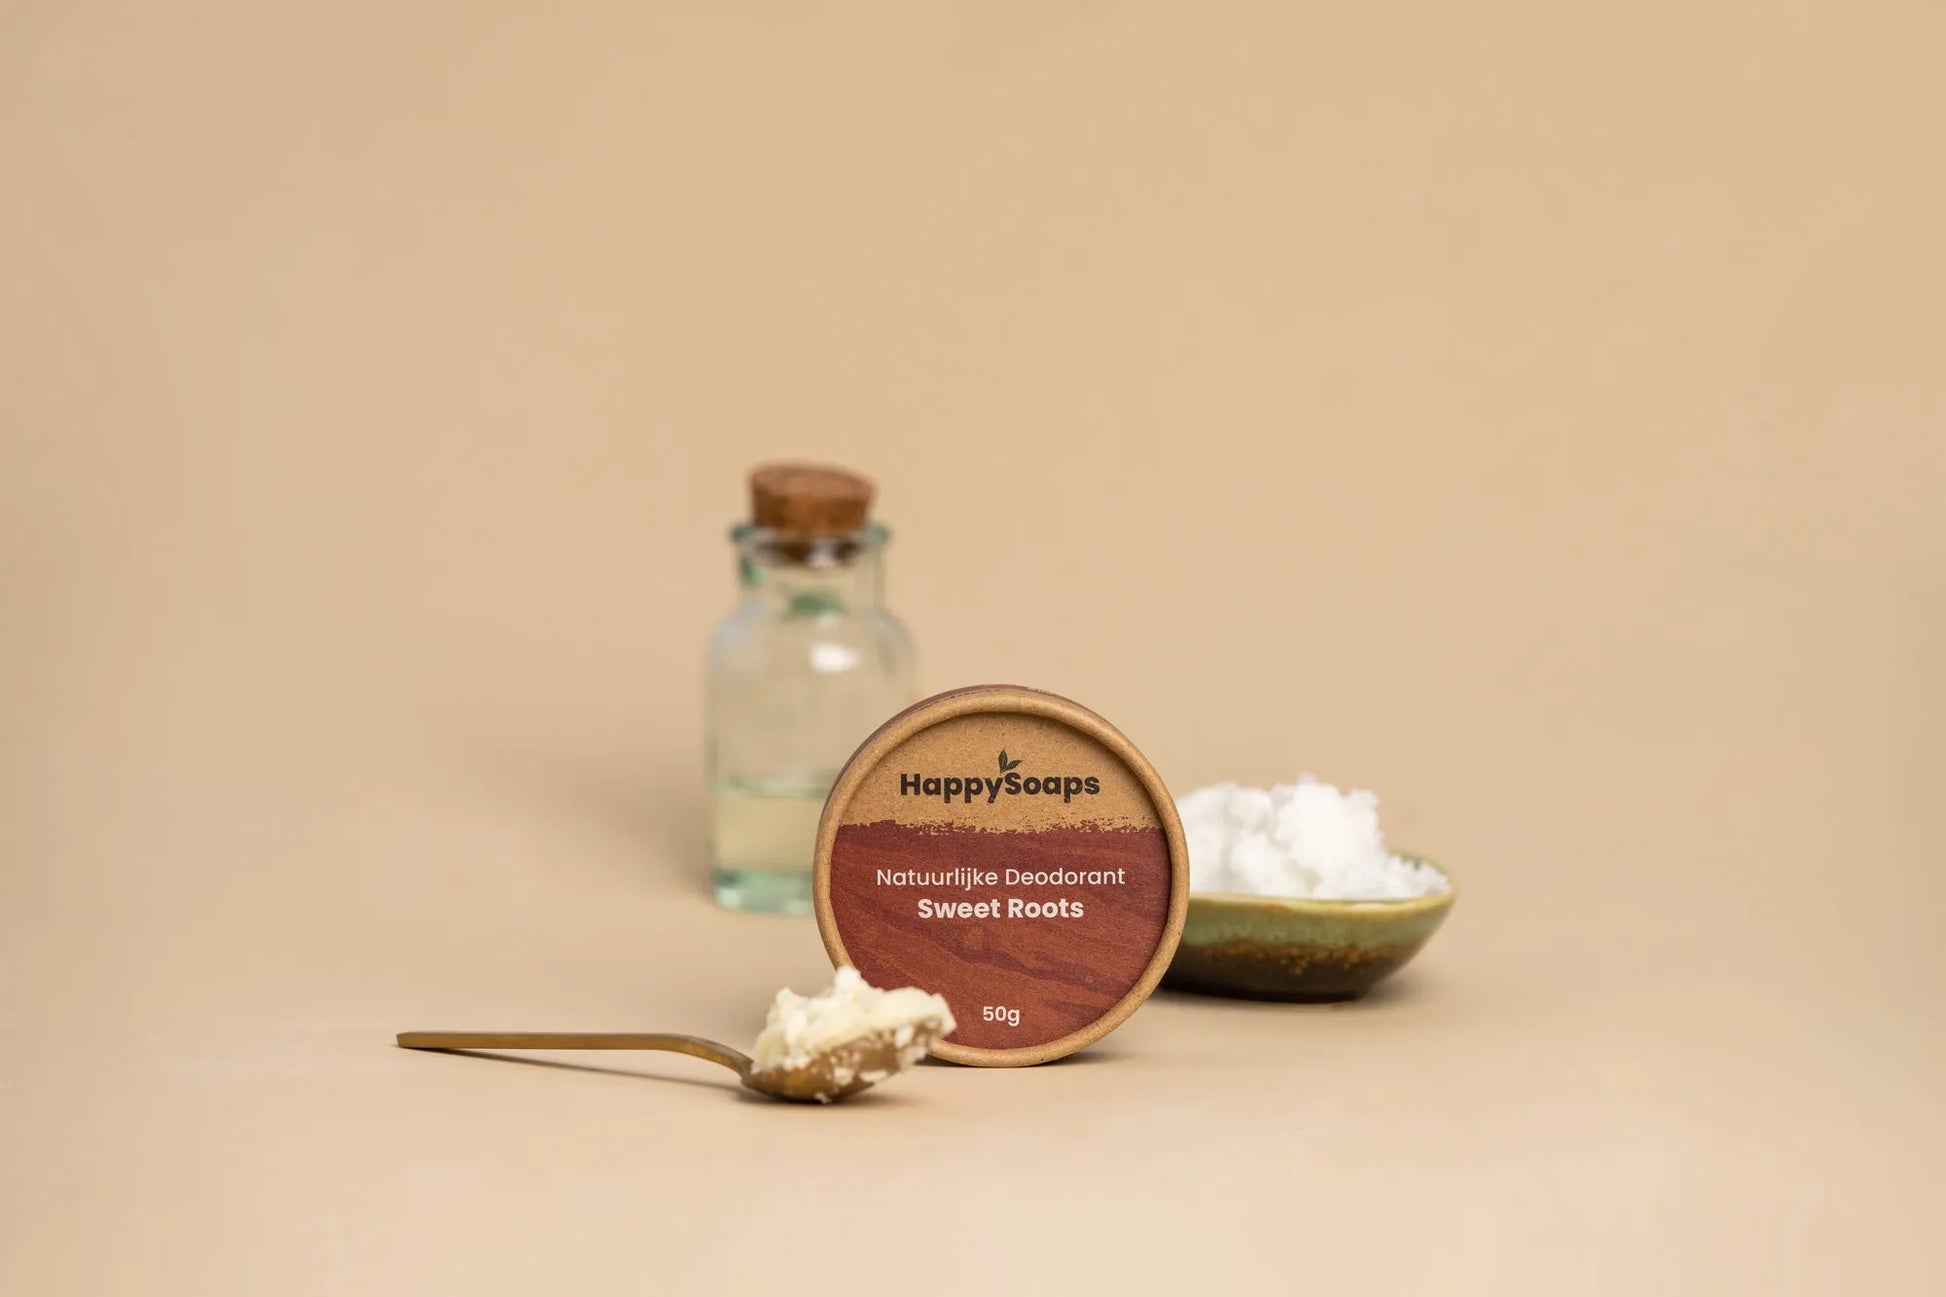 Natuurlijke Deodorant – Sweet Roots, HappySoaps NL